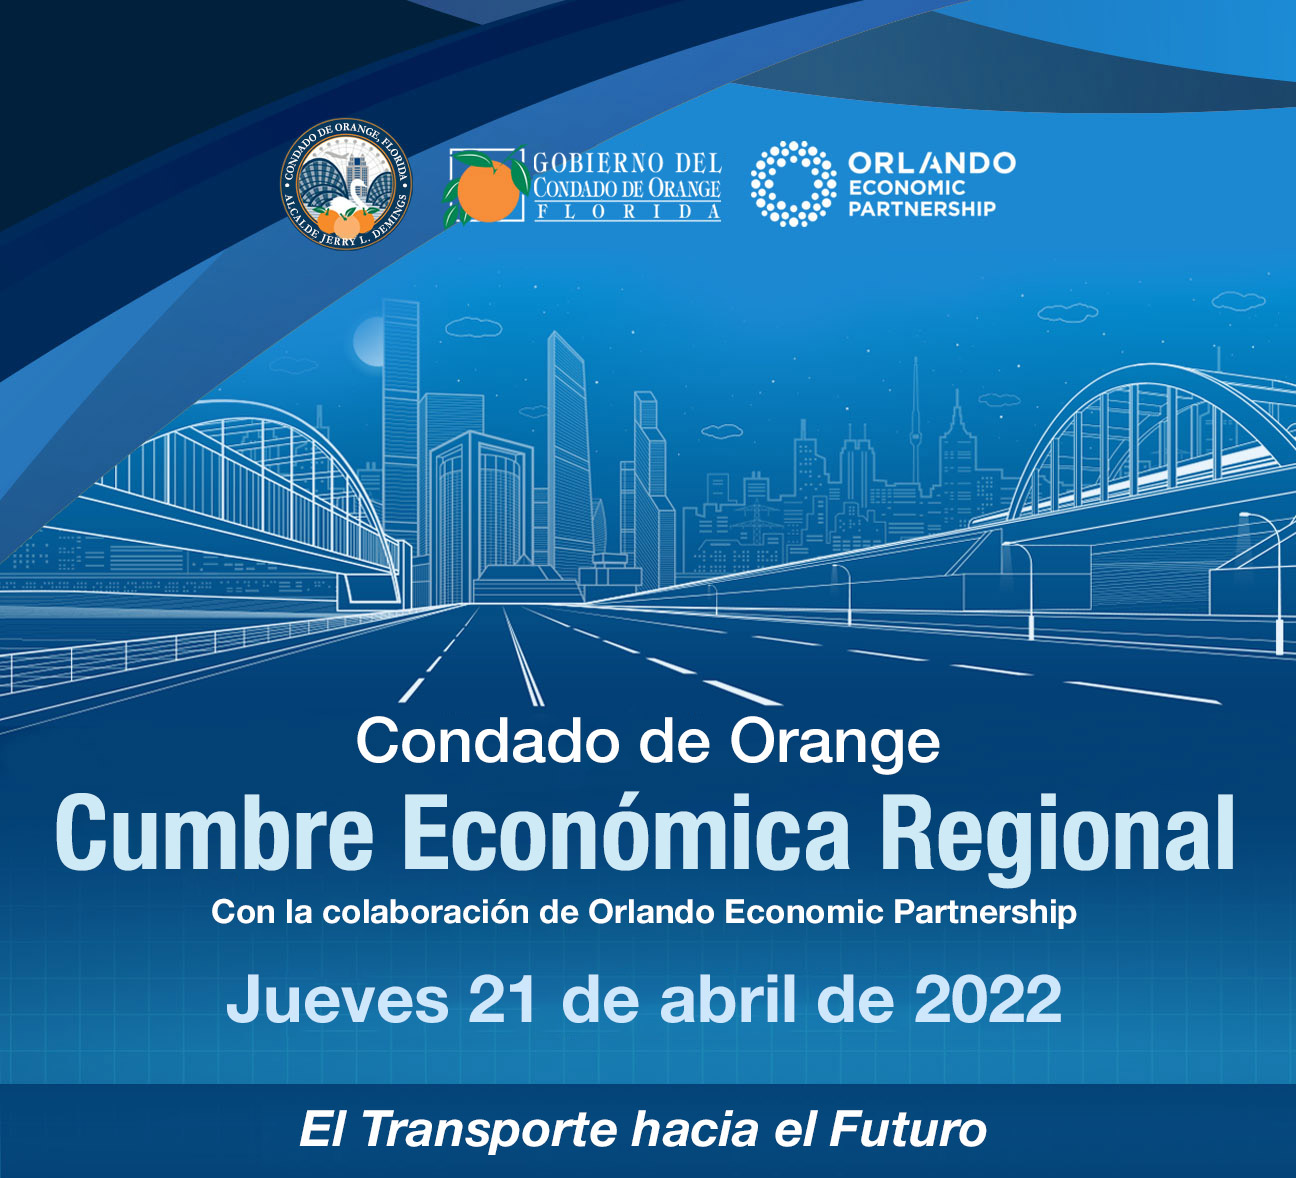 Cumbre Económica Regional del Condado de Orange - Con la colaboración de Orlando Economic Partnership - Jueves 21 de abril de 2022